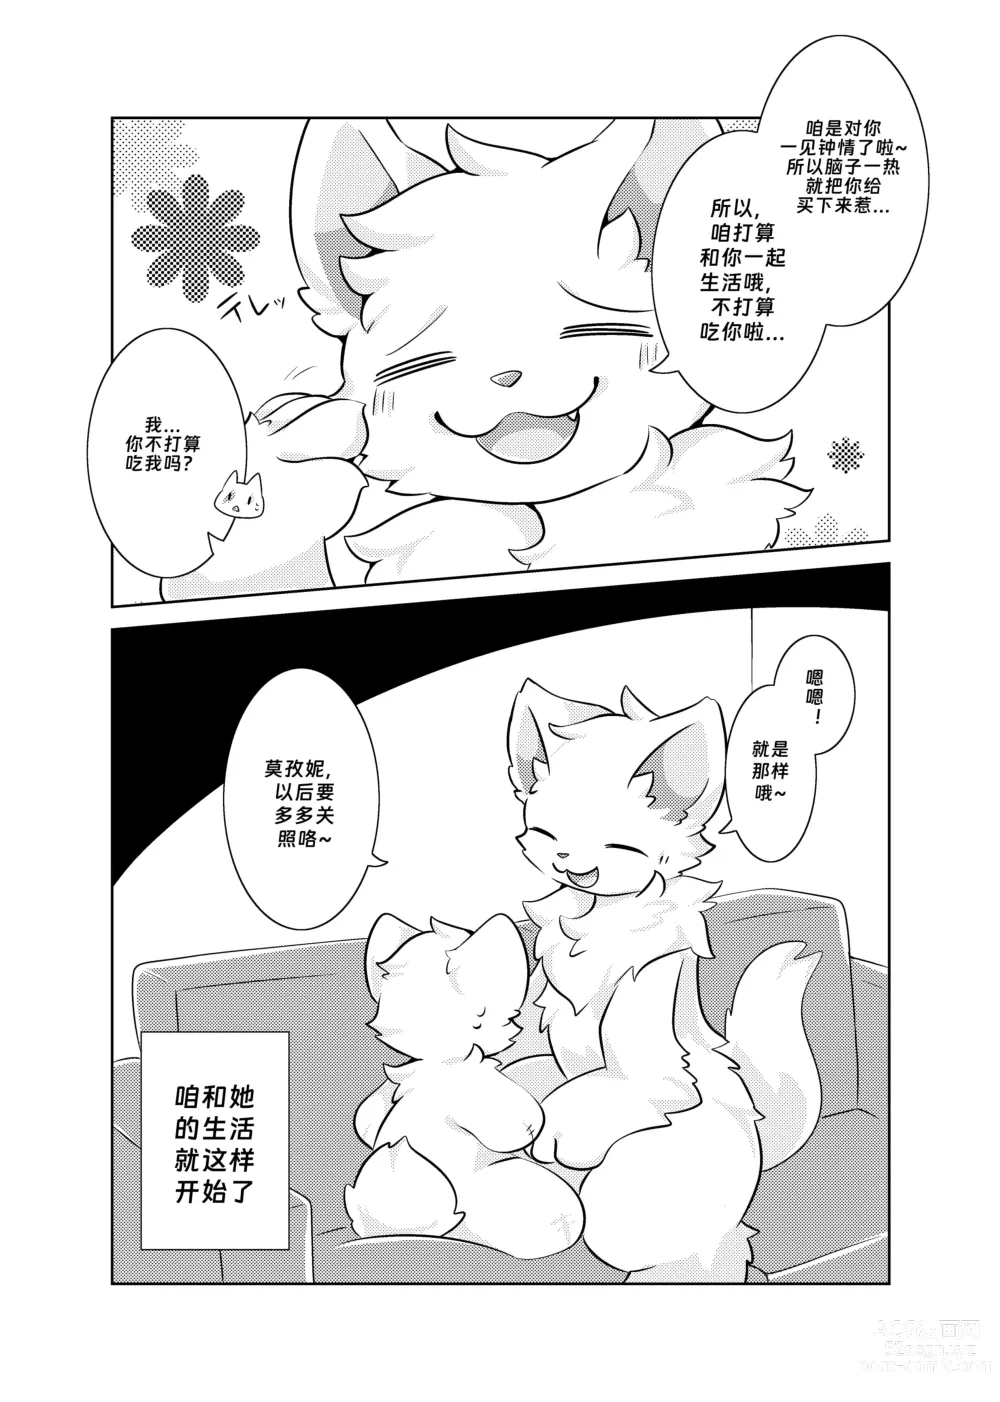 Page 8 of doujinshi Bokuyo motsuni no oishii seikatu.R-18G